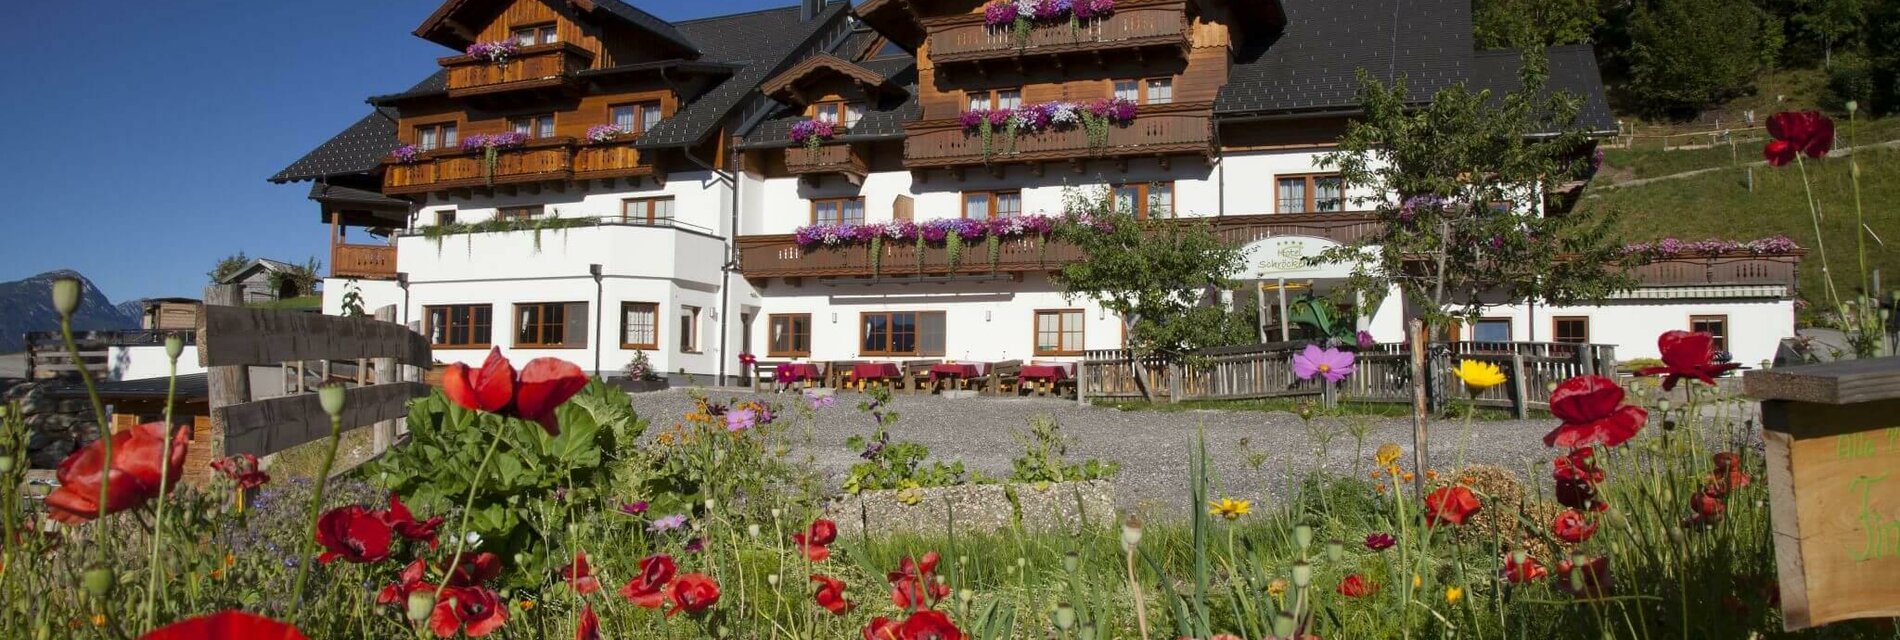 Hotel Schröckerhof im Sommer